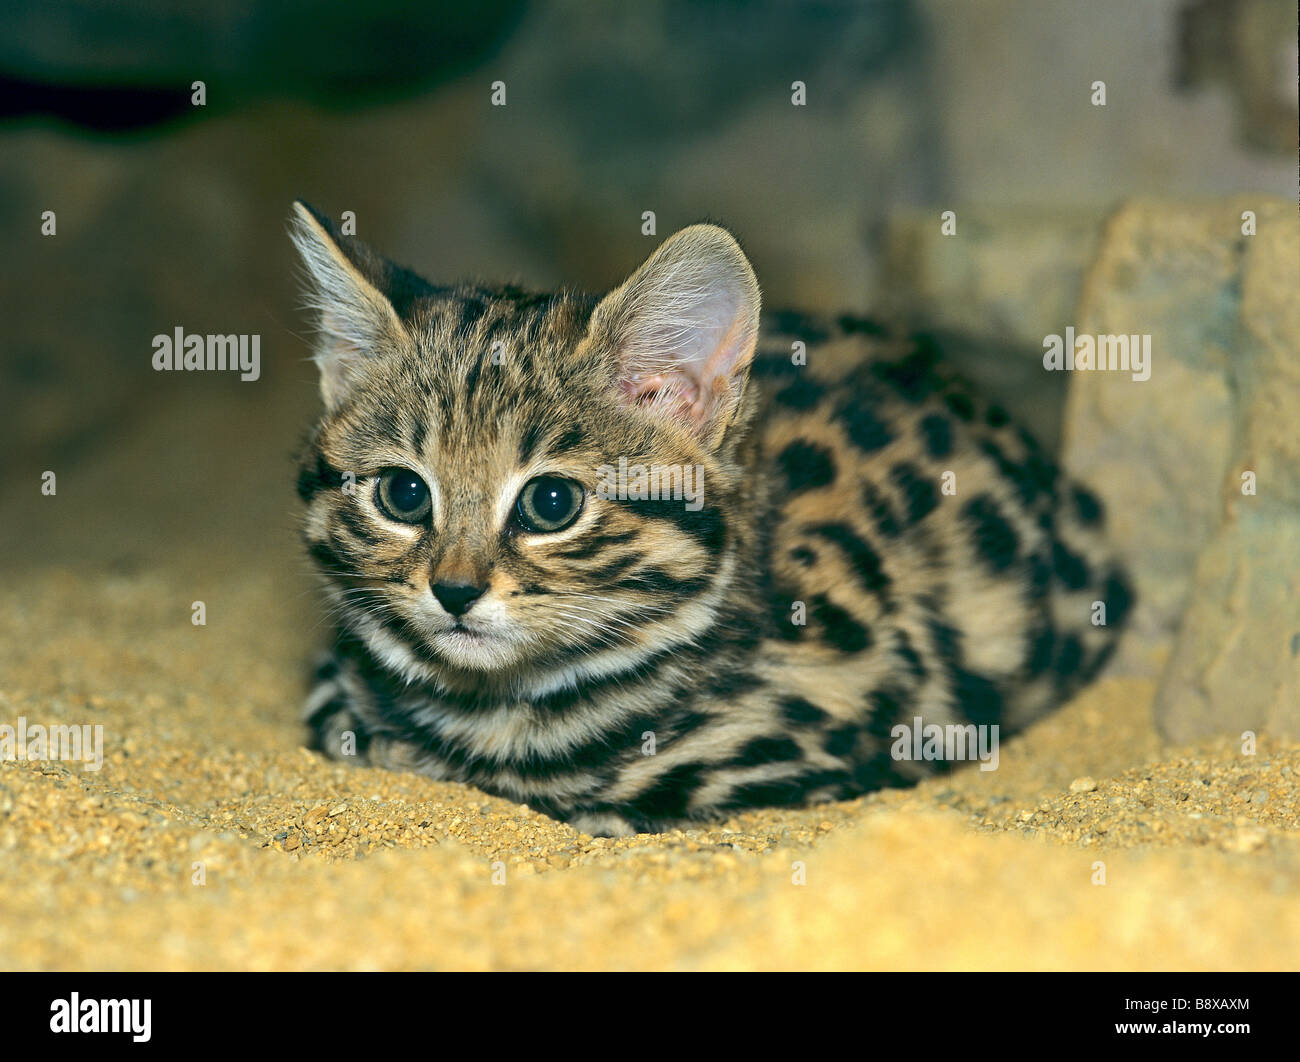 Gato de patas negras (Felis nigripes), gatito mintiendo Foto de stock